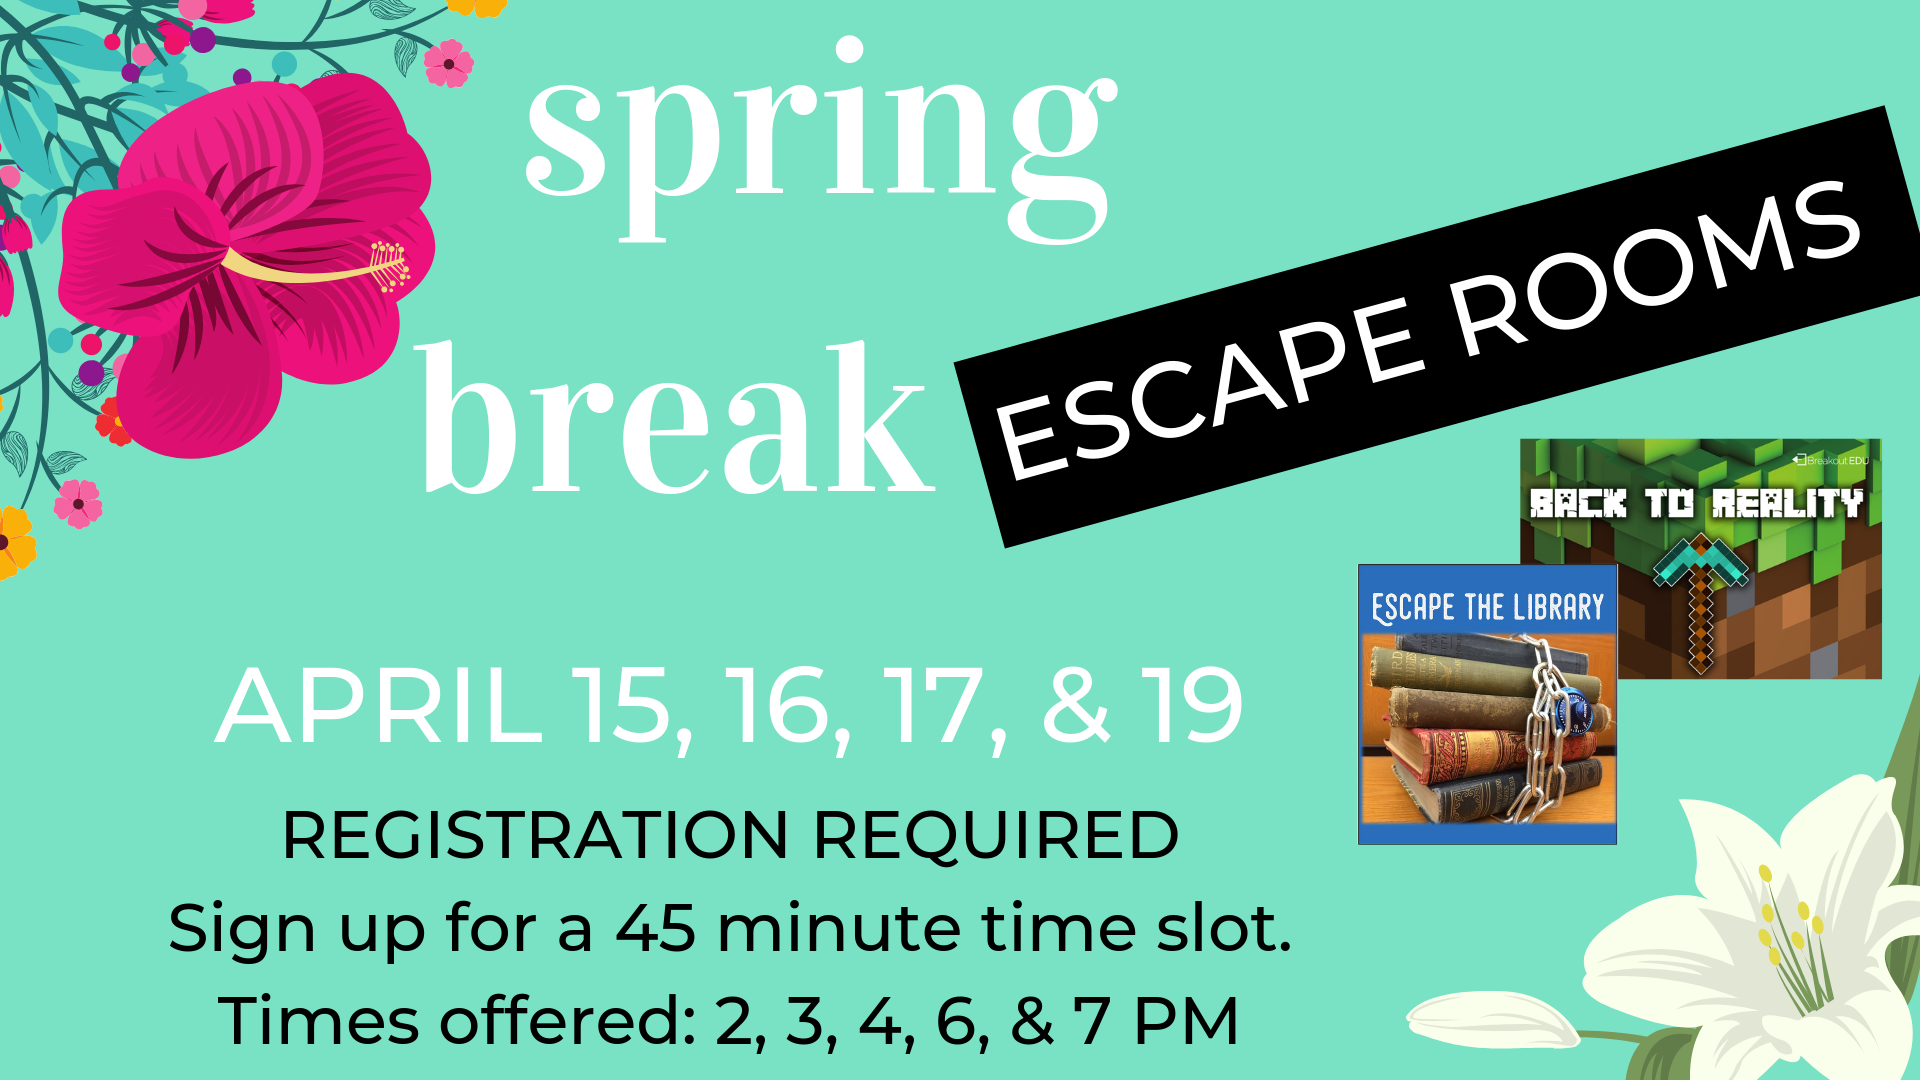 Spring Break Escape Room flyer